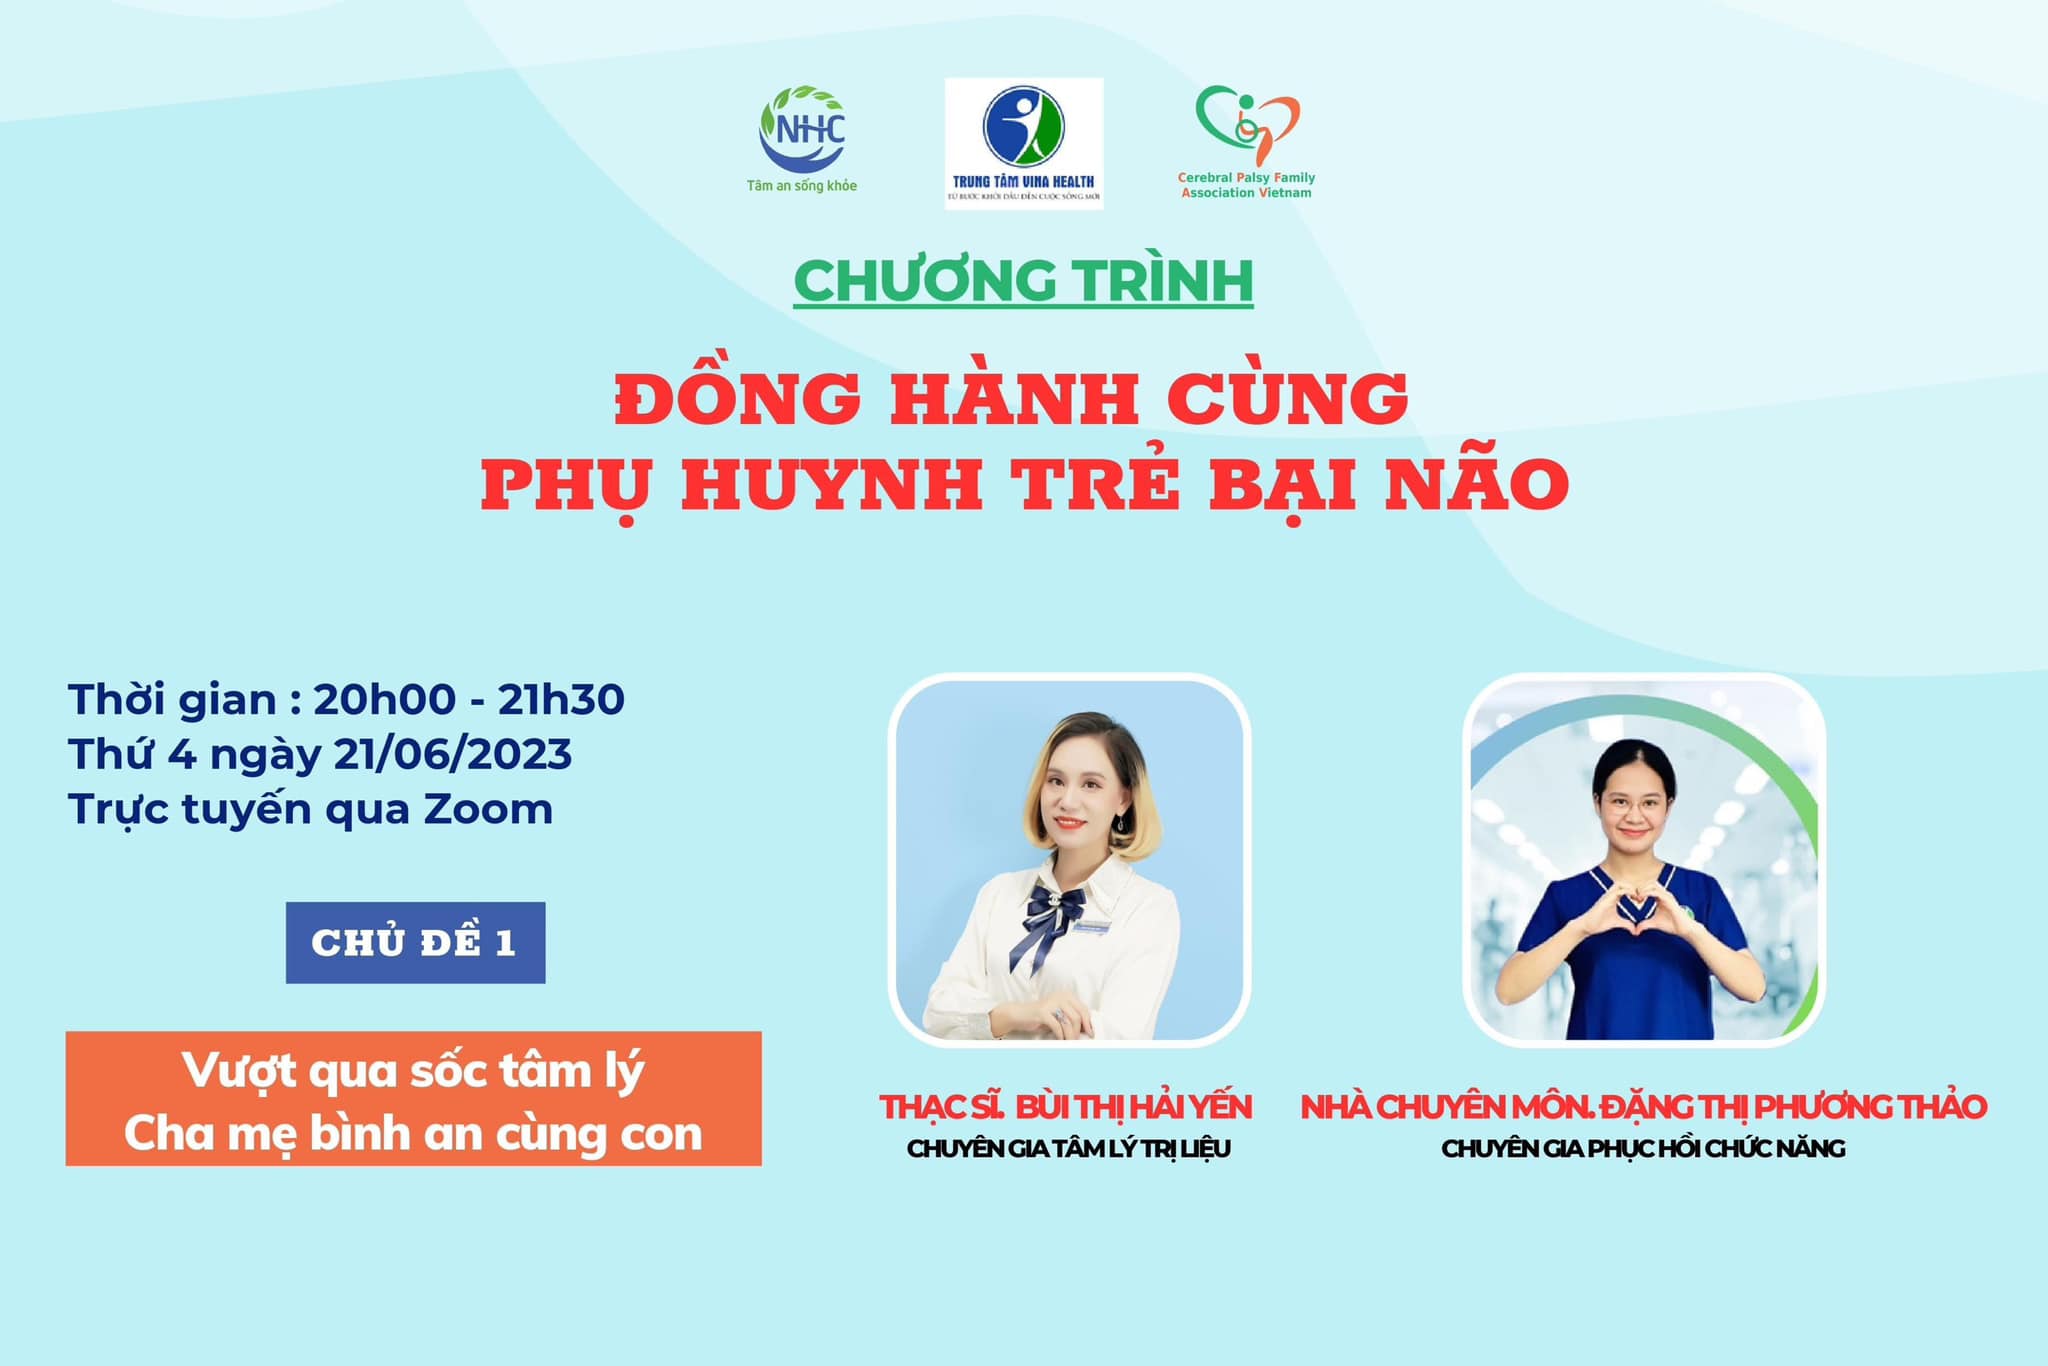 Chuỗi chương trình NHC Việt Nam Đồng hành cùng Phụ huynh trẻ Bại não